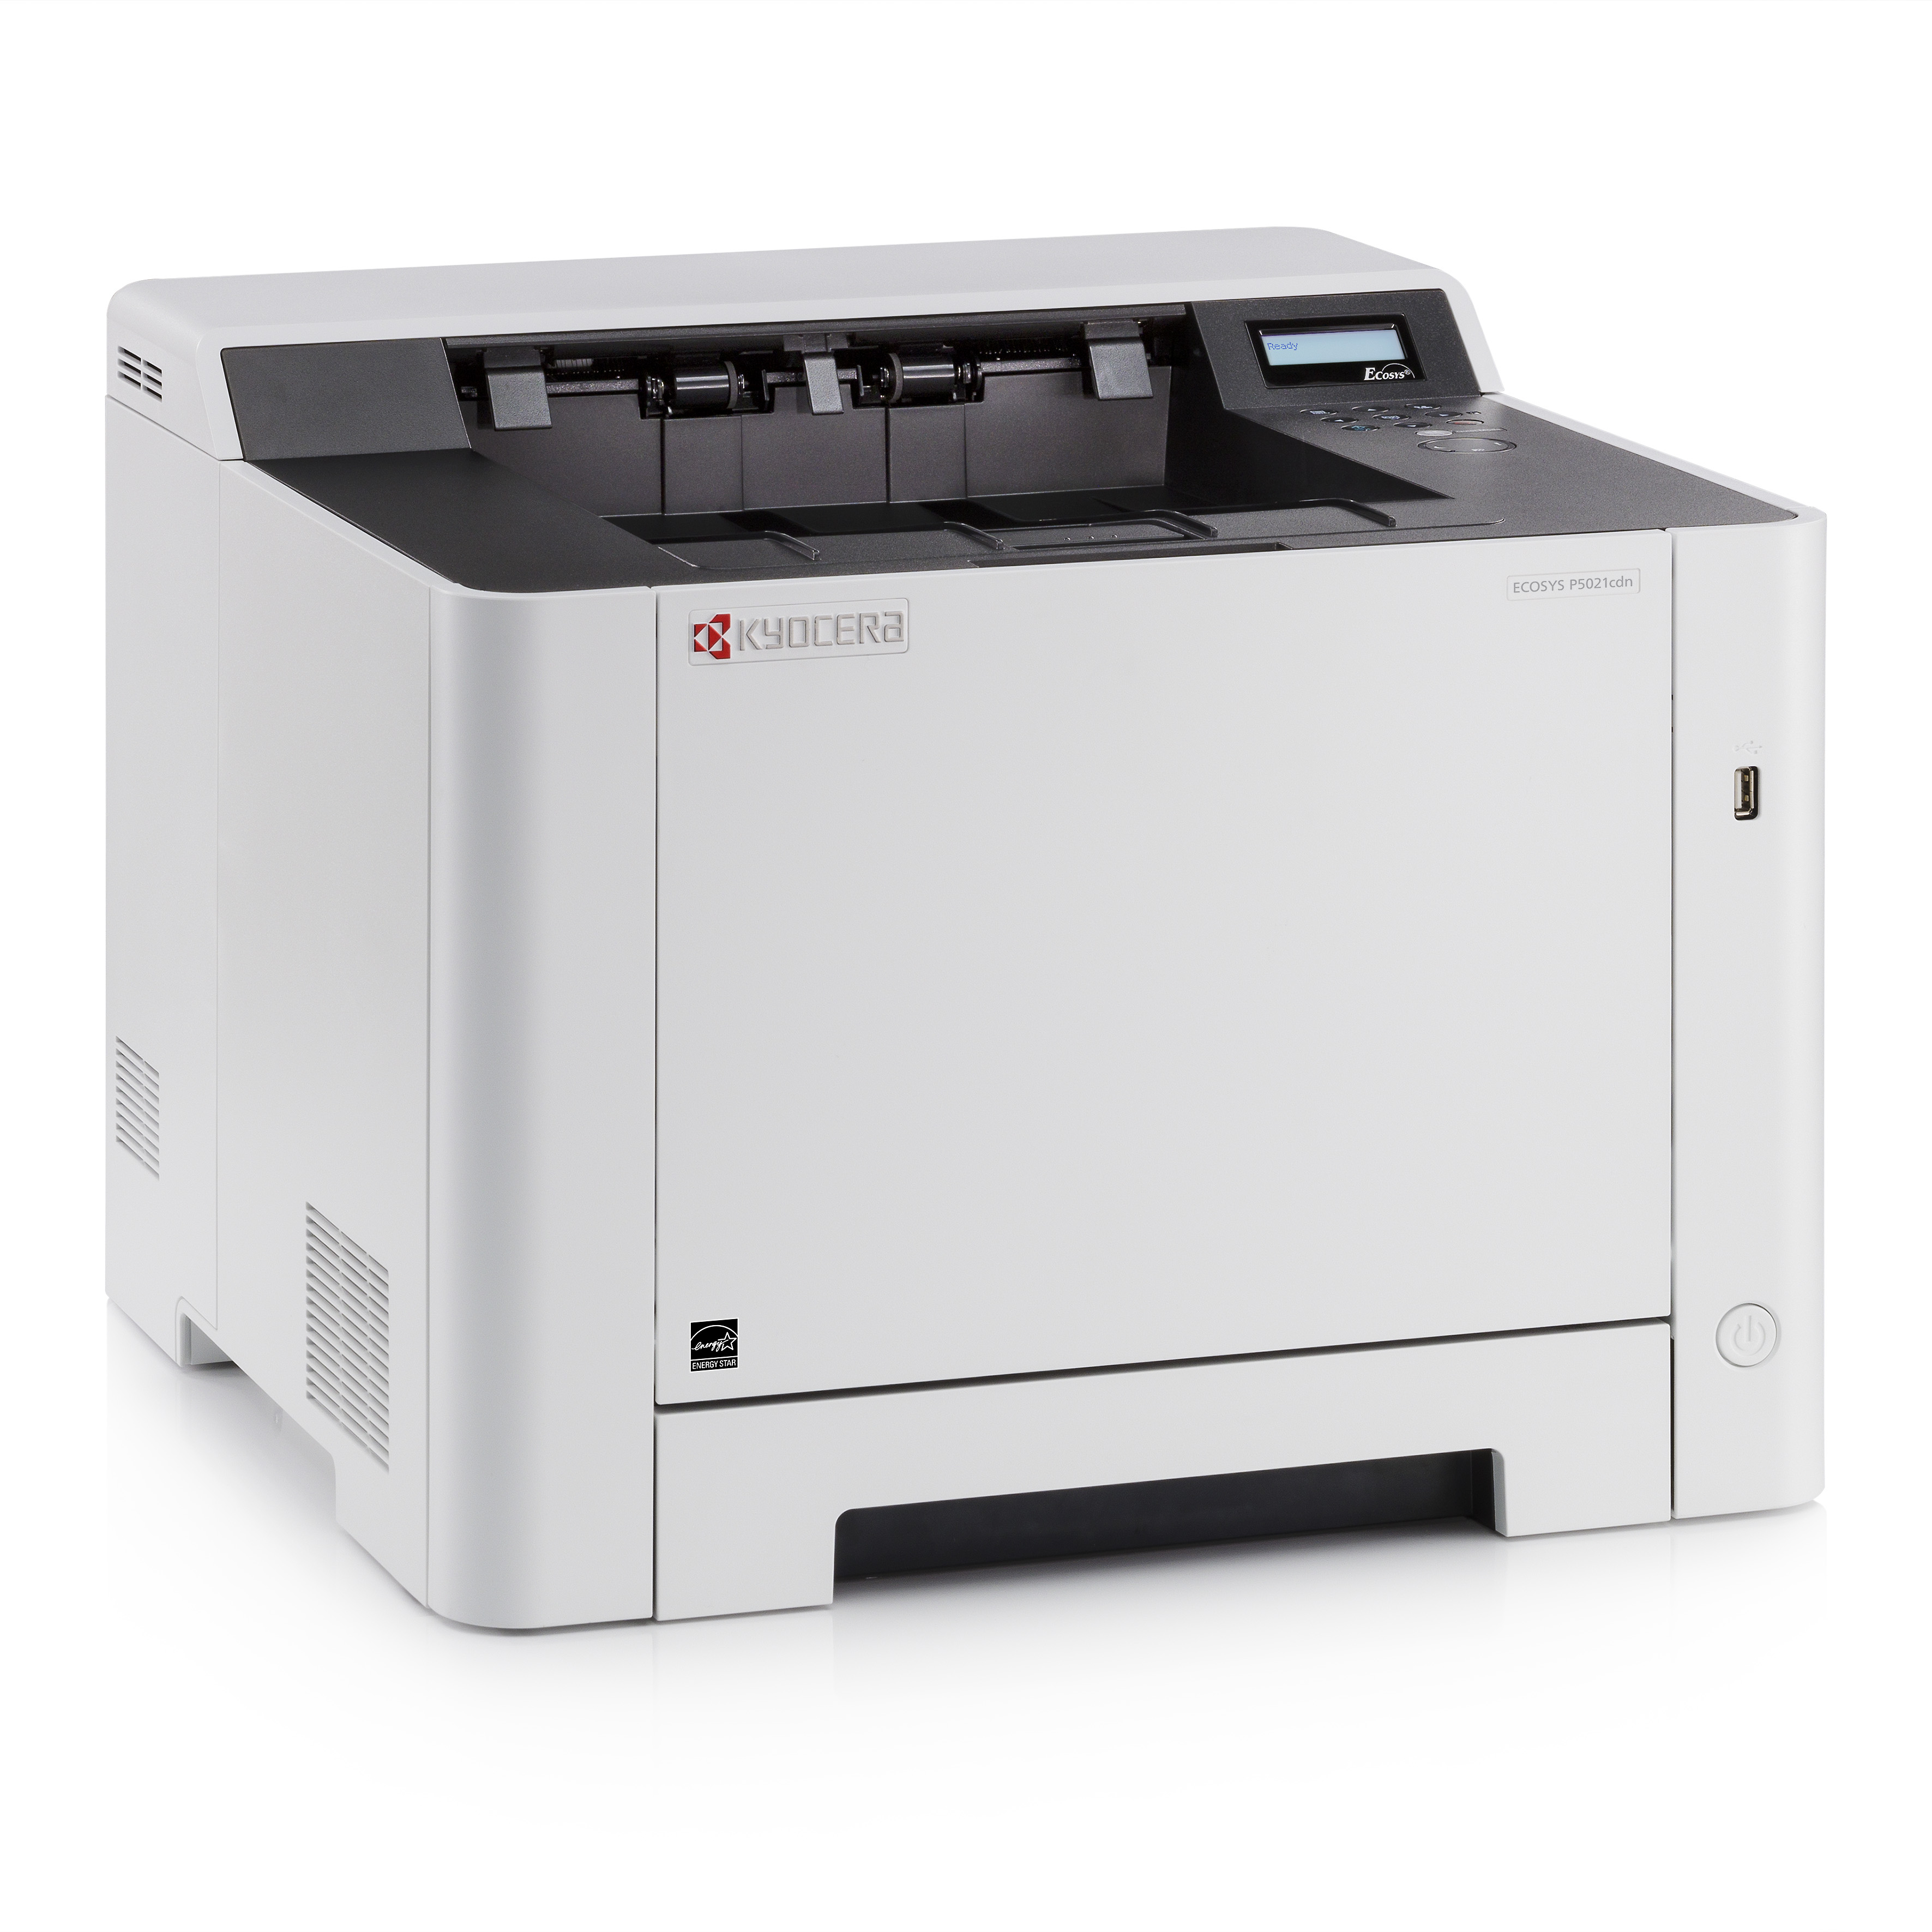 Kyocera анонсировала новые цветные принтеры и МФУ формата А4